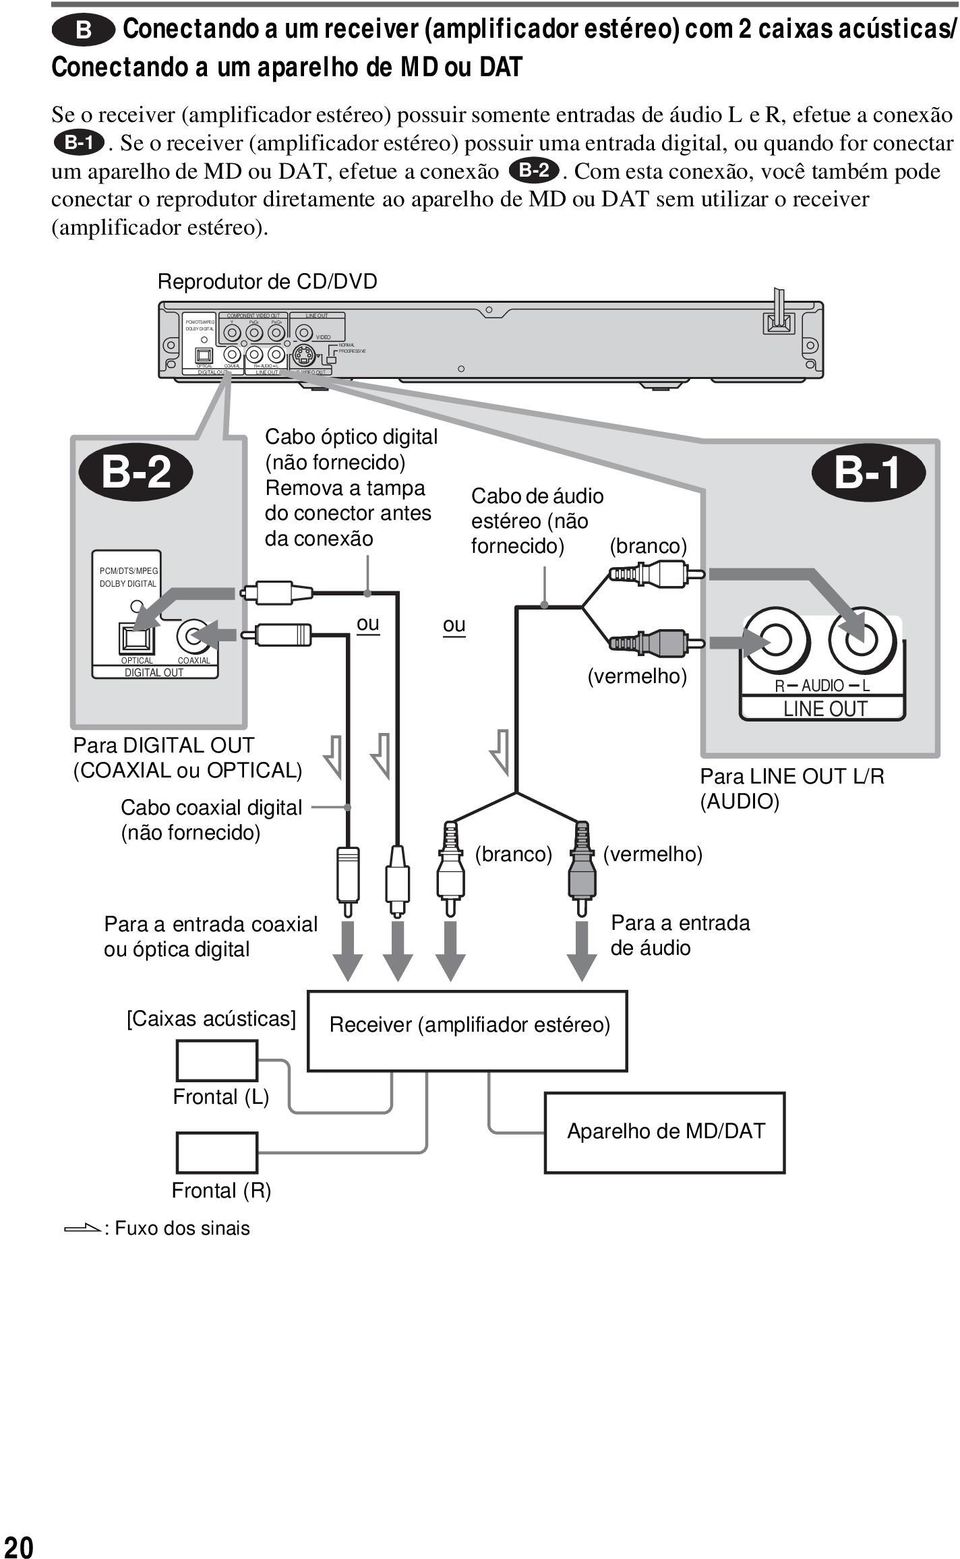 Se o receiver (amplificador estéreo) possuir uma entrada digital, ou quando for conectar um aparelho de MD ou DAT, efetue a conexão B-2.